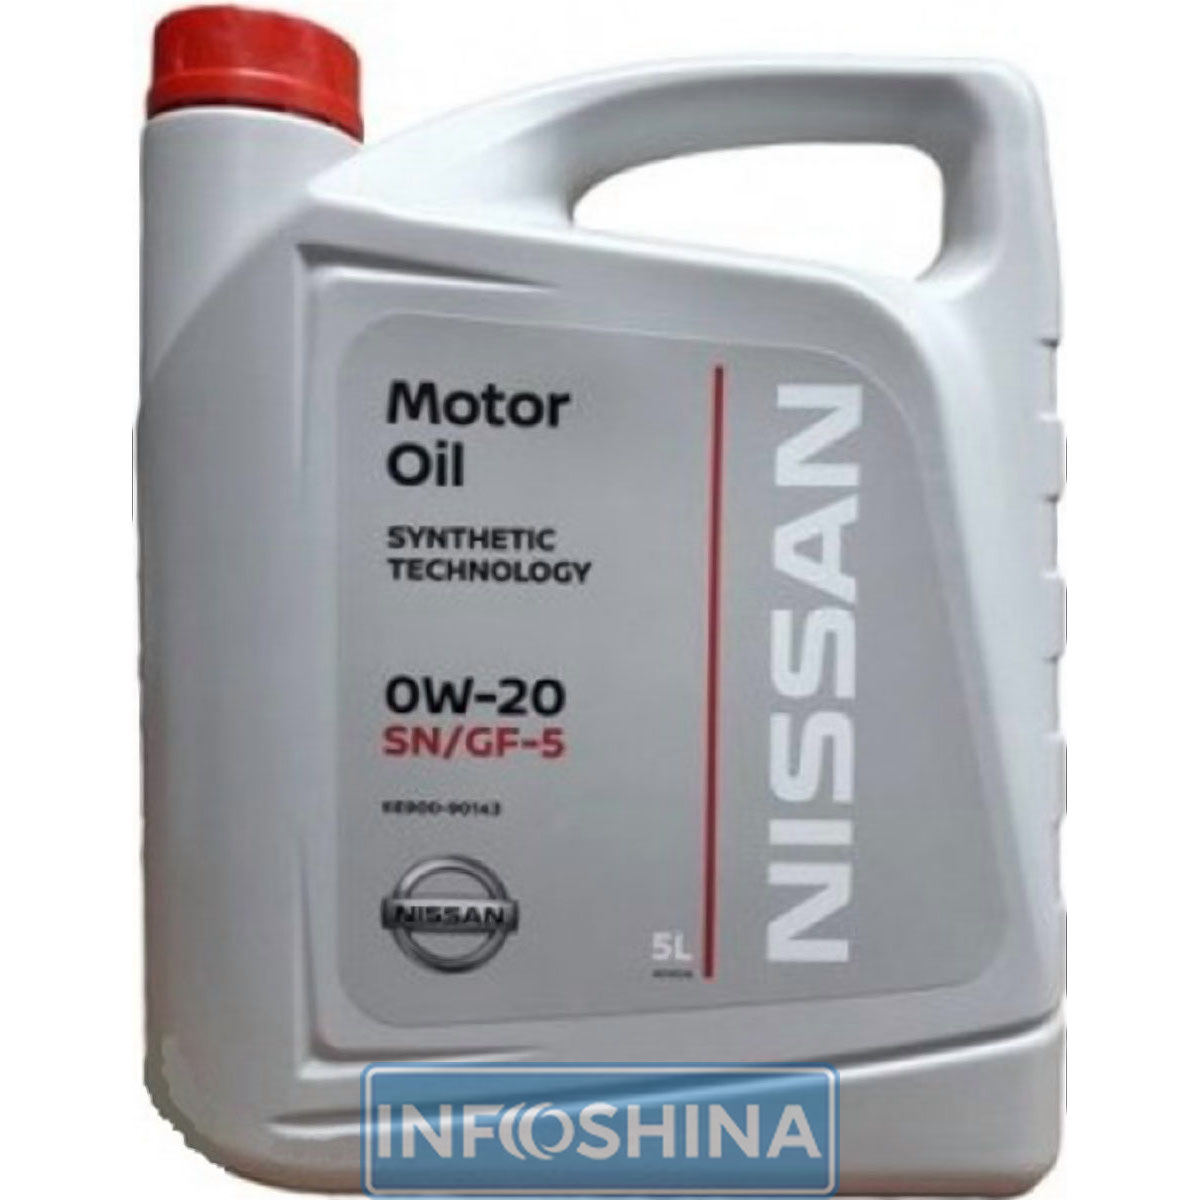 Nissan Motor oil 0W-20